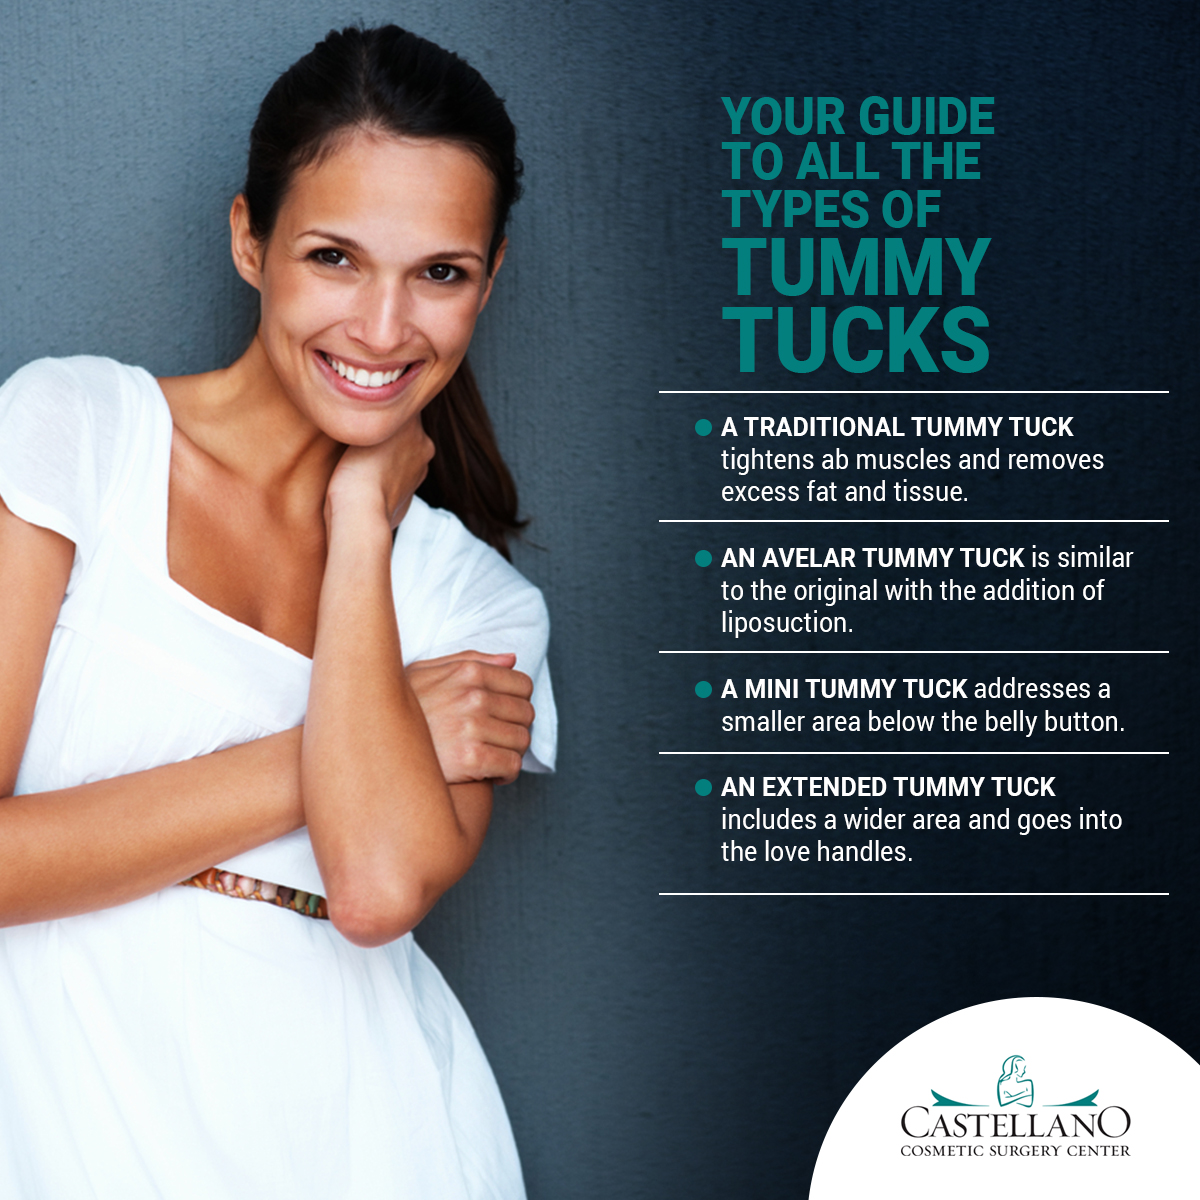 Castellano - Tummy Tuck Types - Infographic - Nov 2021